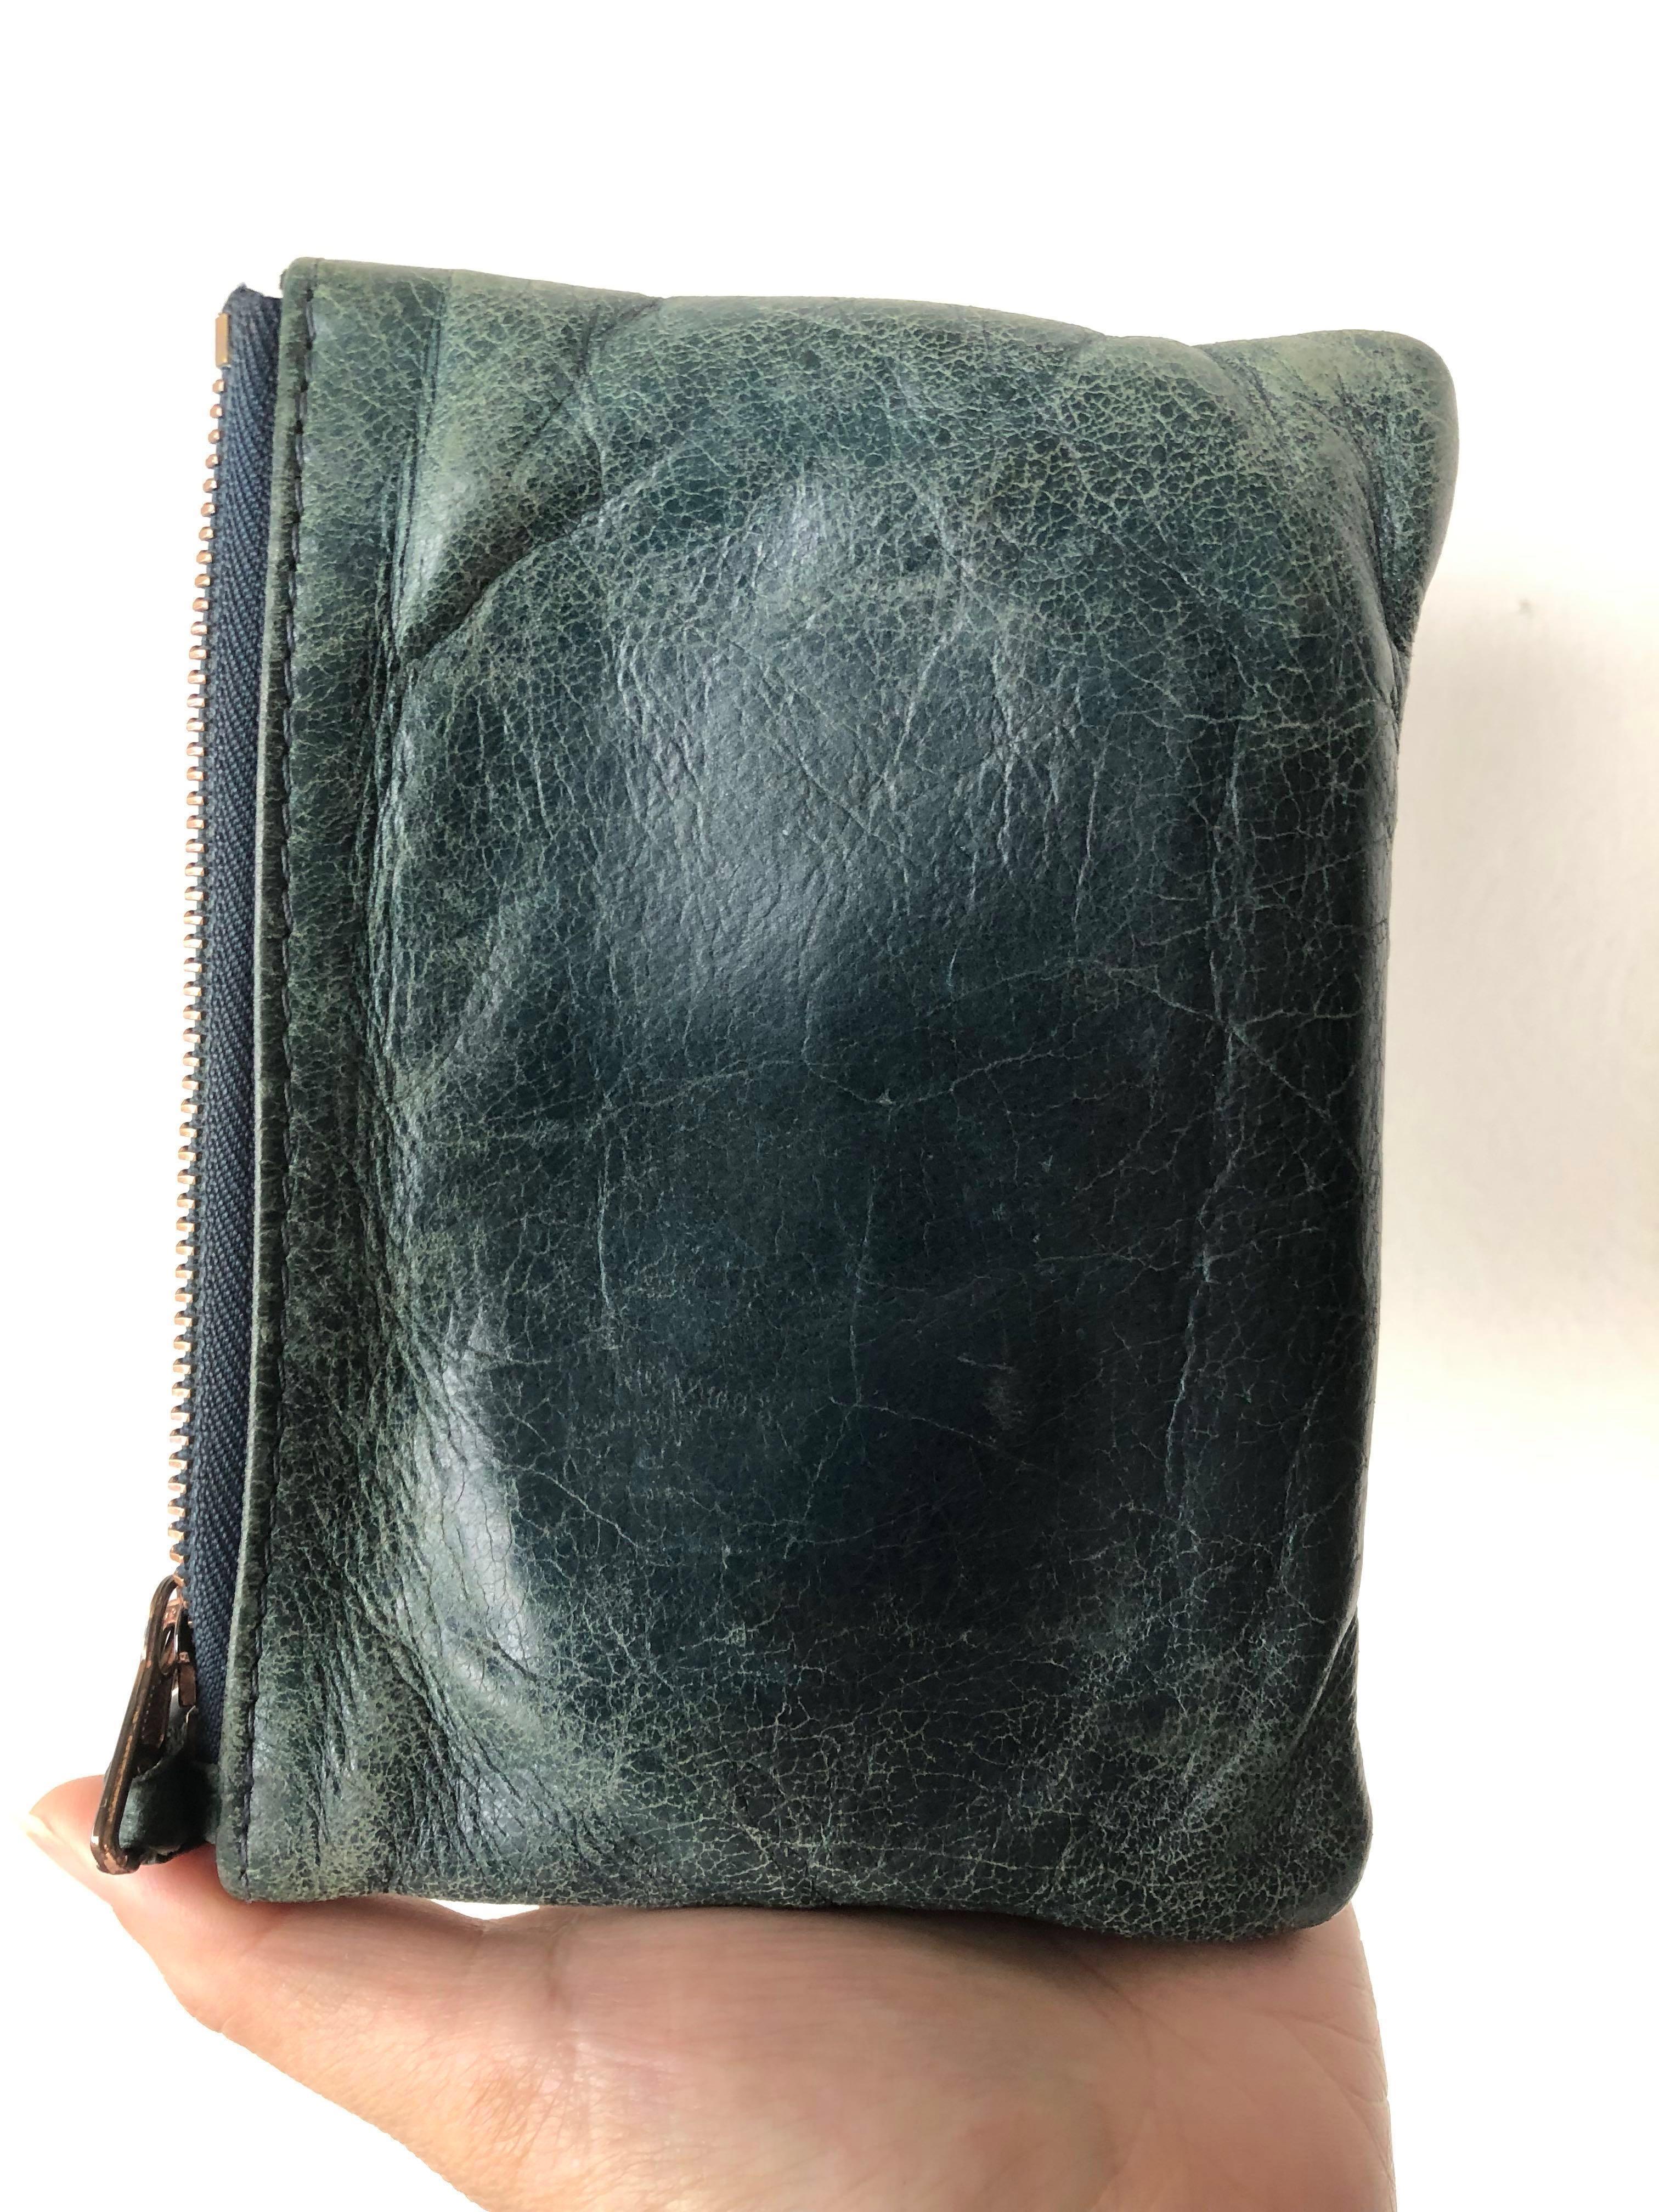 Balenciaga Leather Coin Purse Pouch Wallet